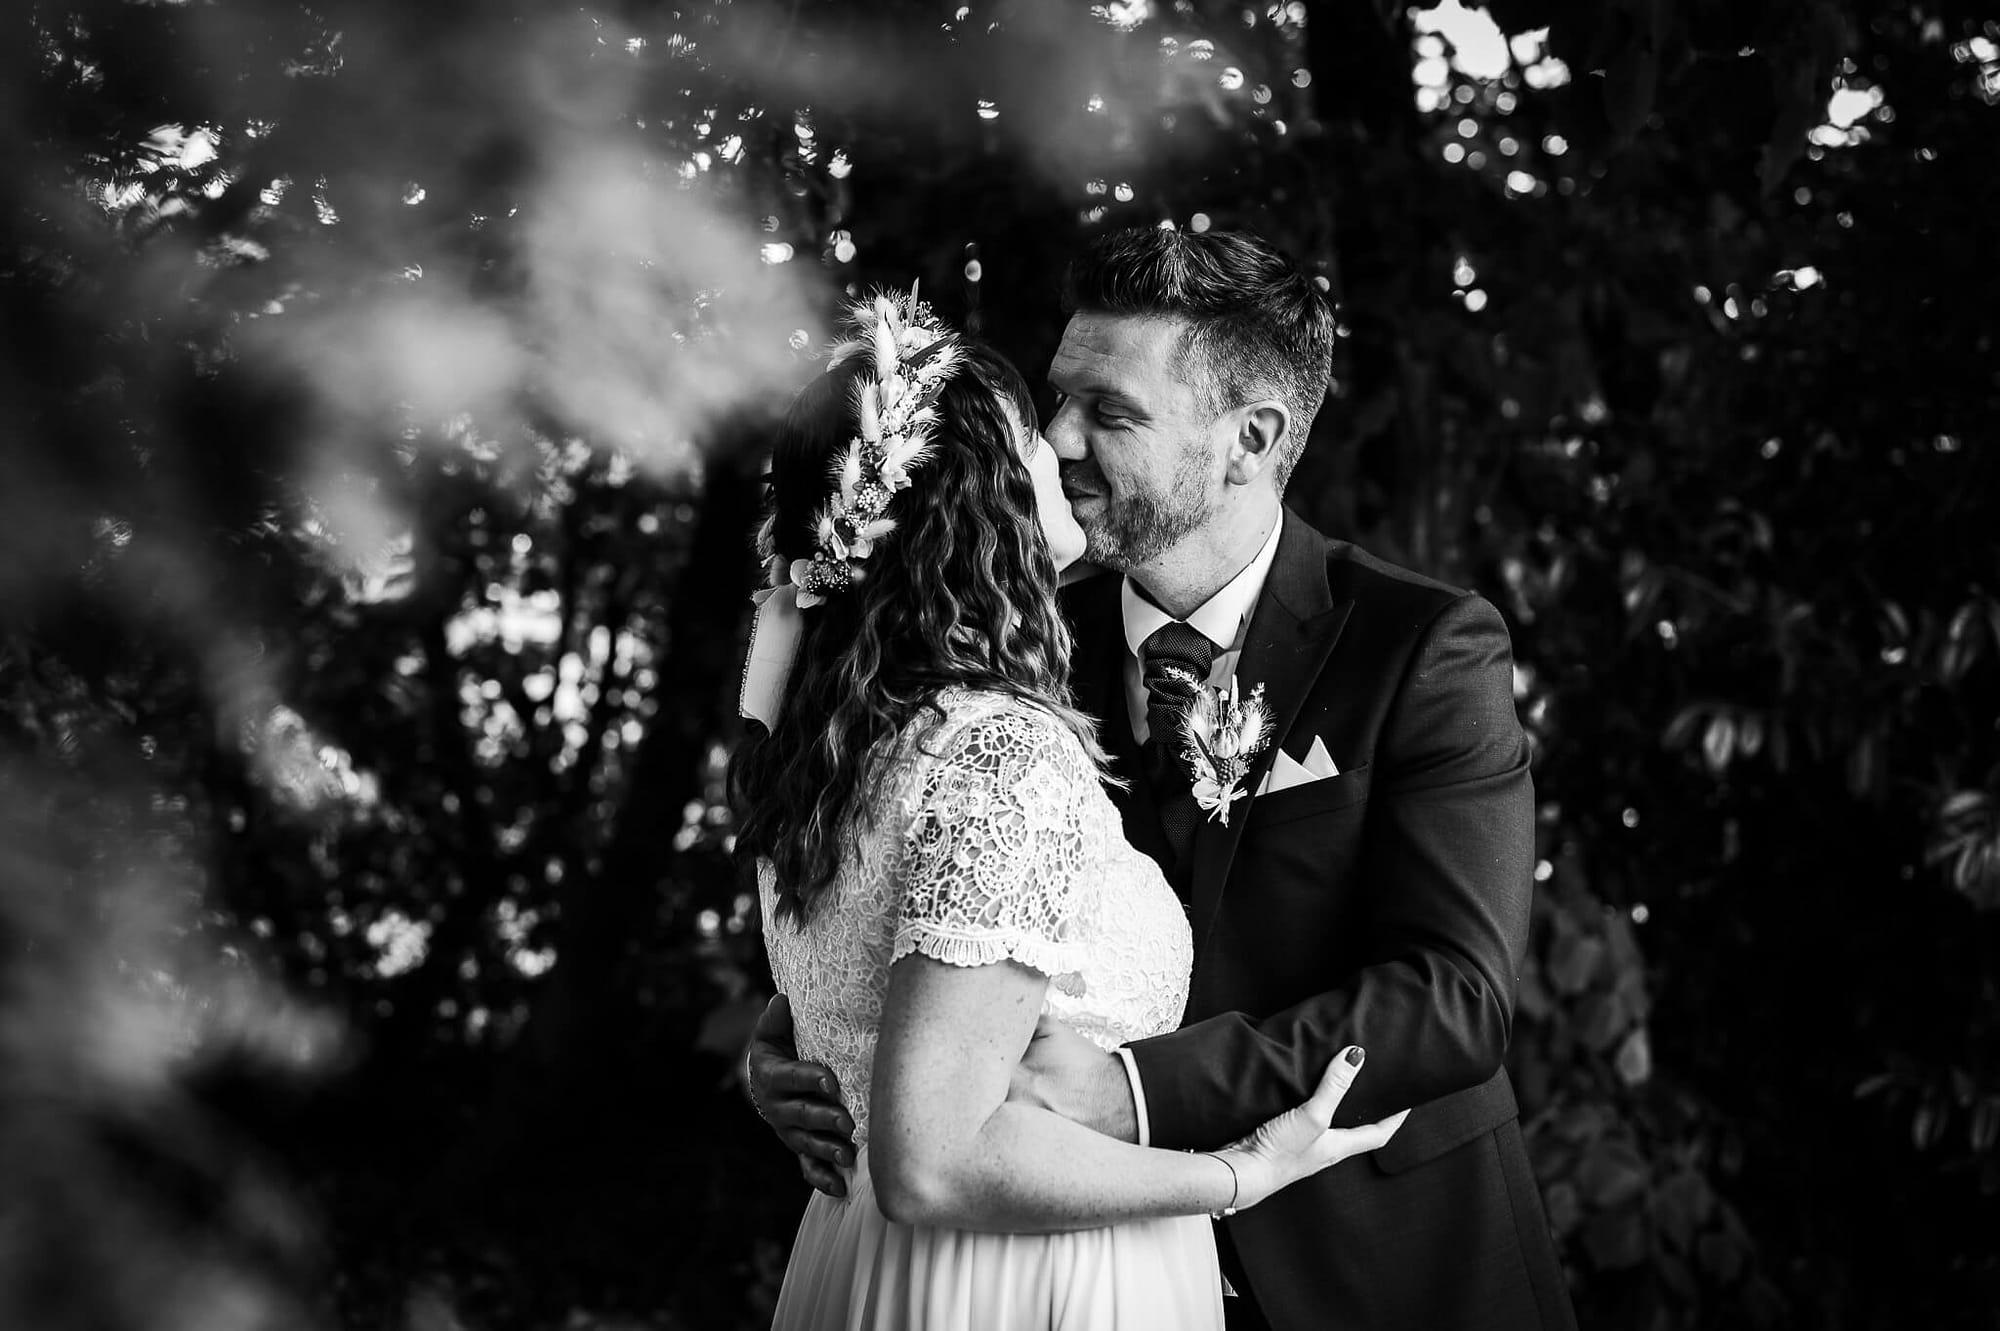 photographie noir et blanc de mariés qui s’embrassent